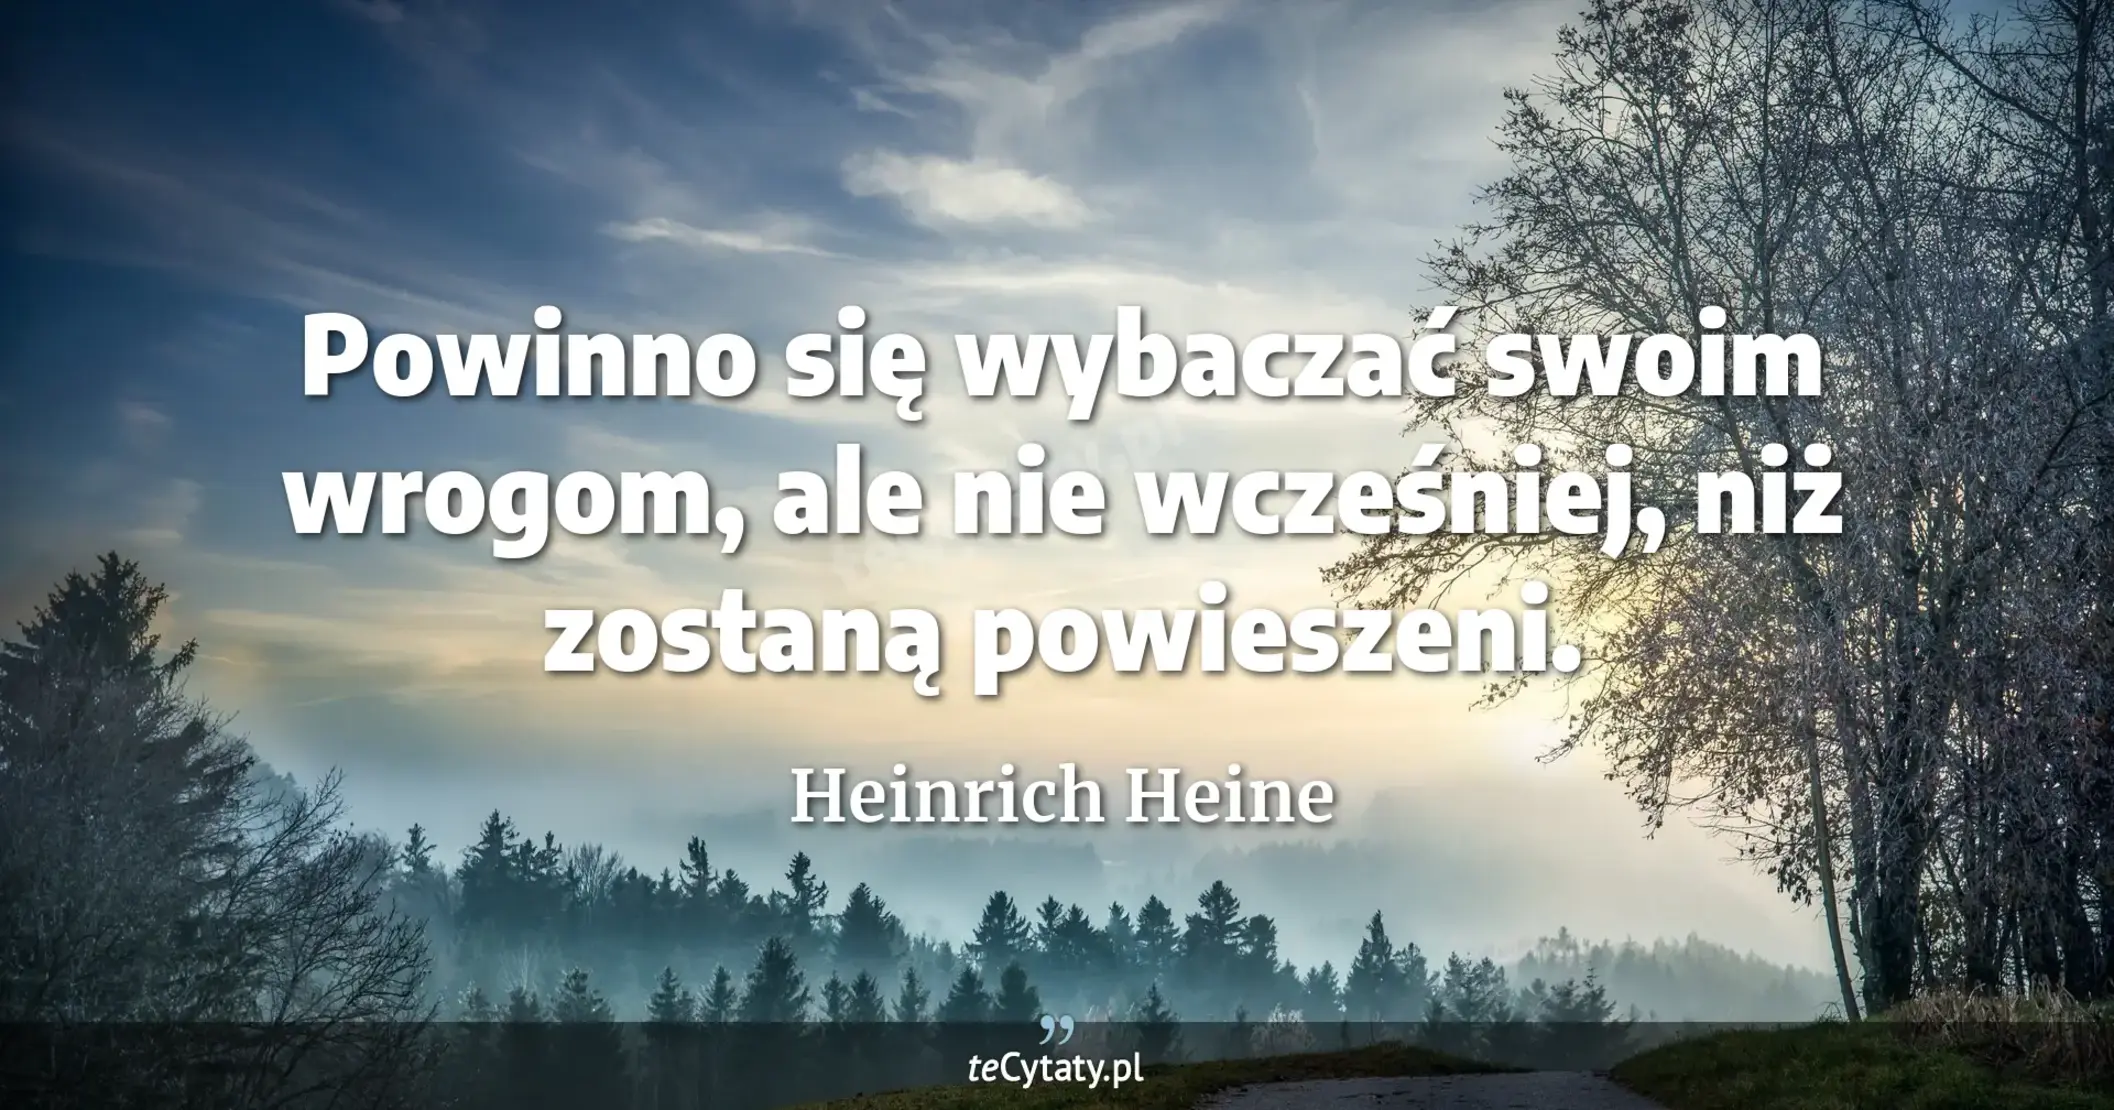 Powinno się wybaczać swoim wrogom, ale nie wcześniej, niż zostaną powieszeni. - Heinrich Heine